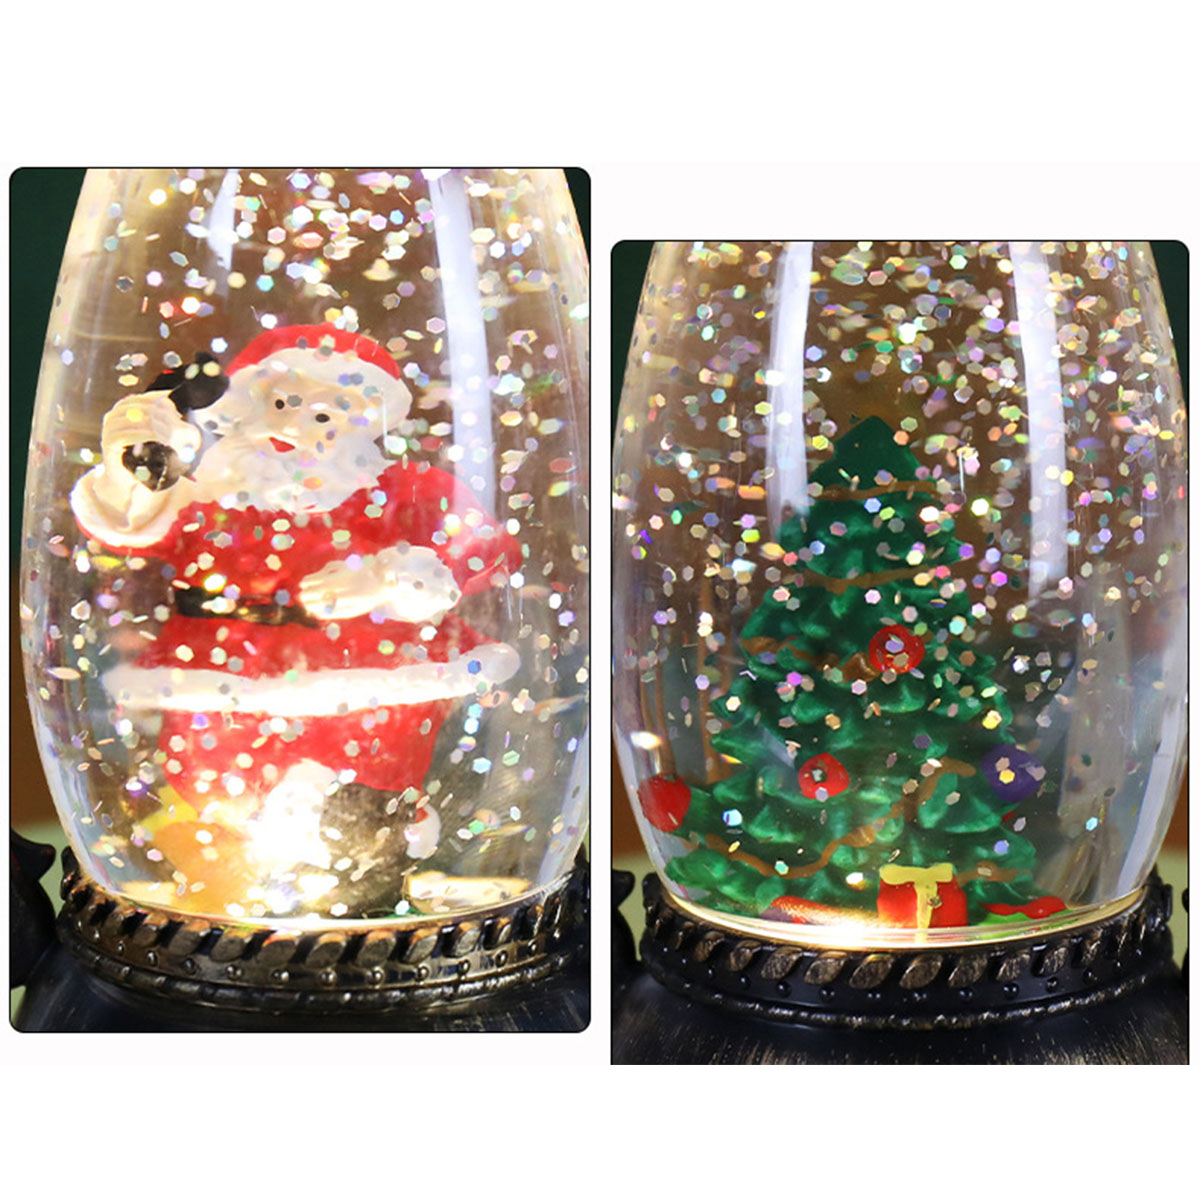 Öllampe Atmosphäre - Weihnachtsdekoration BRIGHTAKE Magische Kristallkugellichter Festliche für